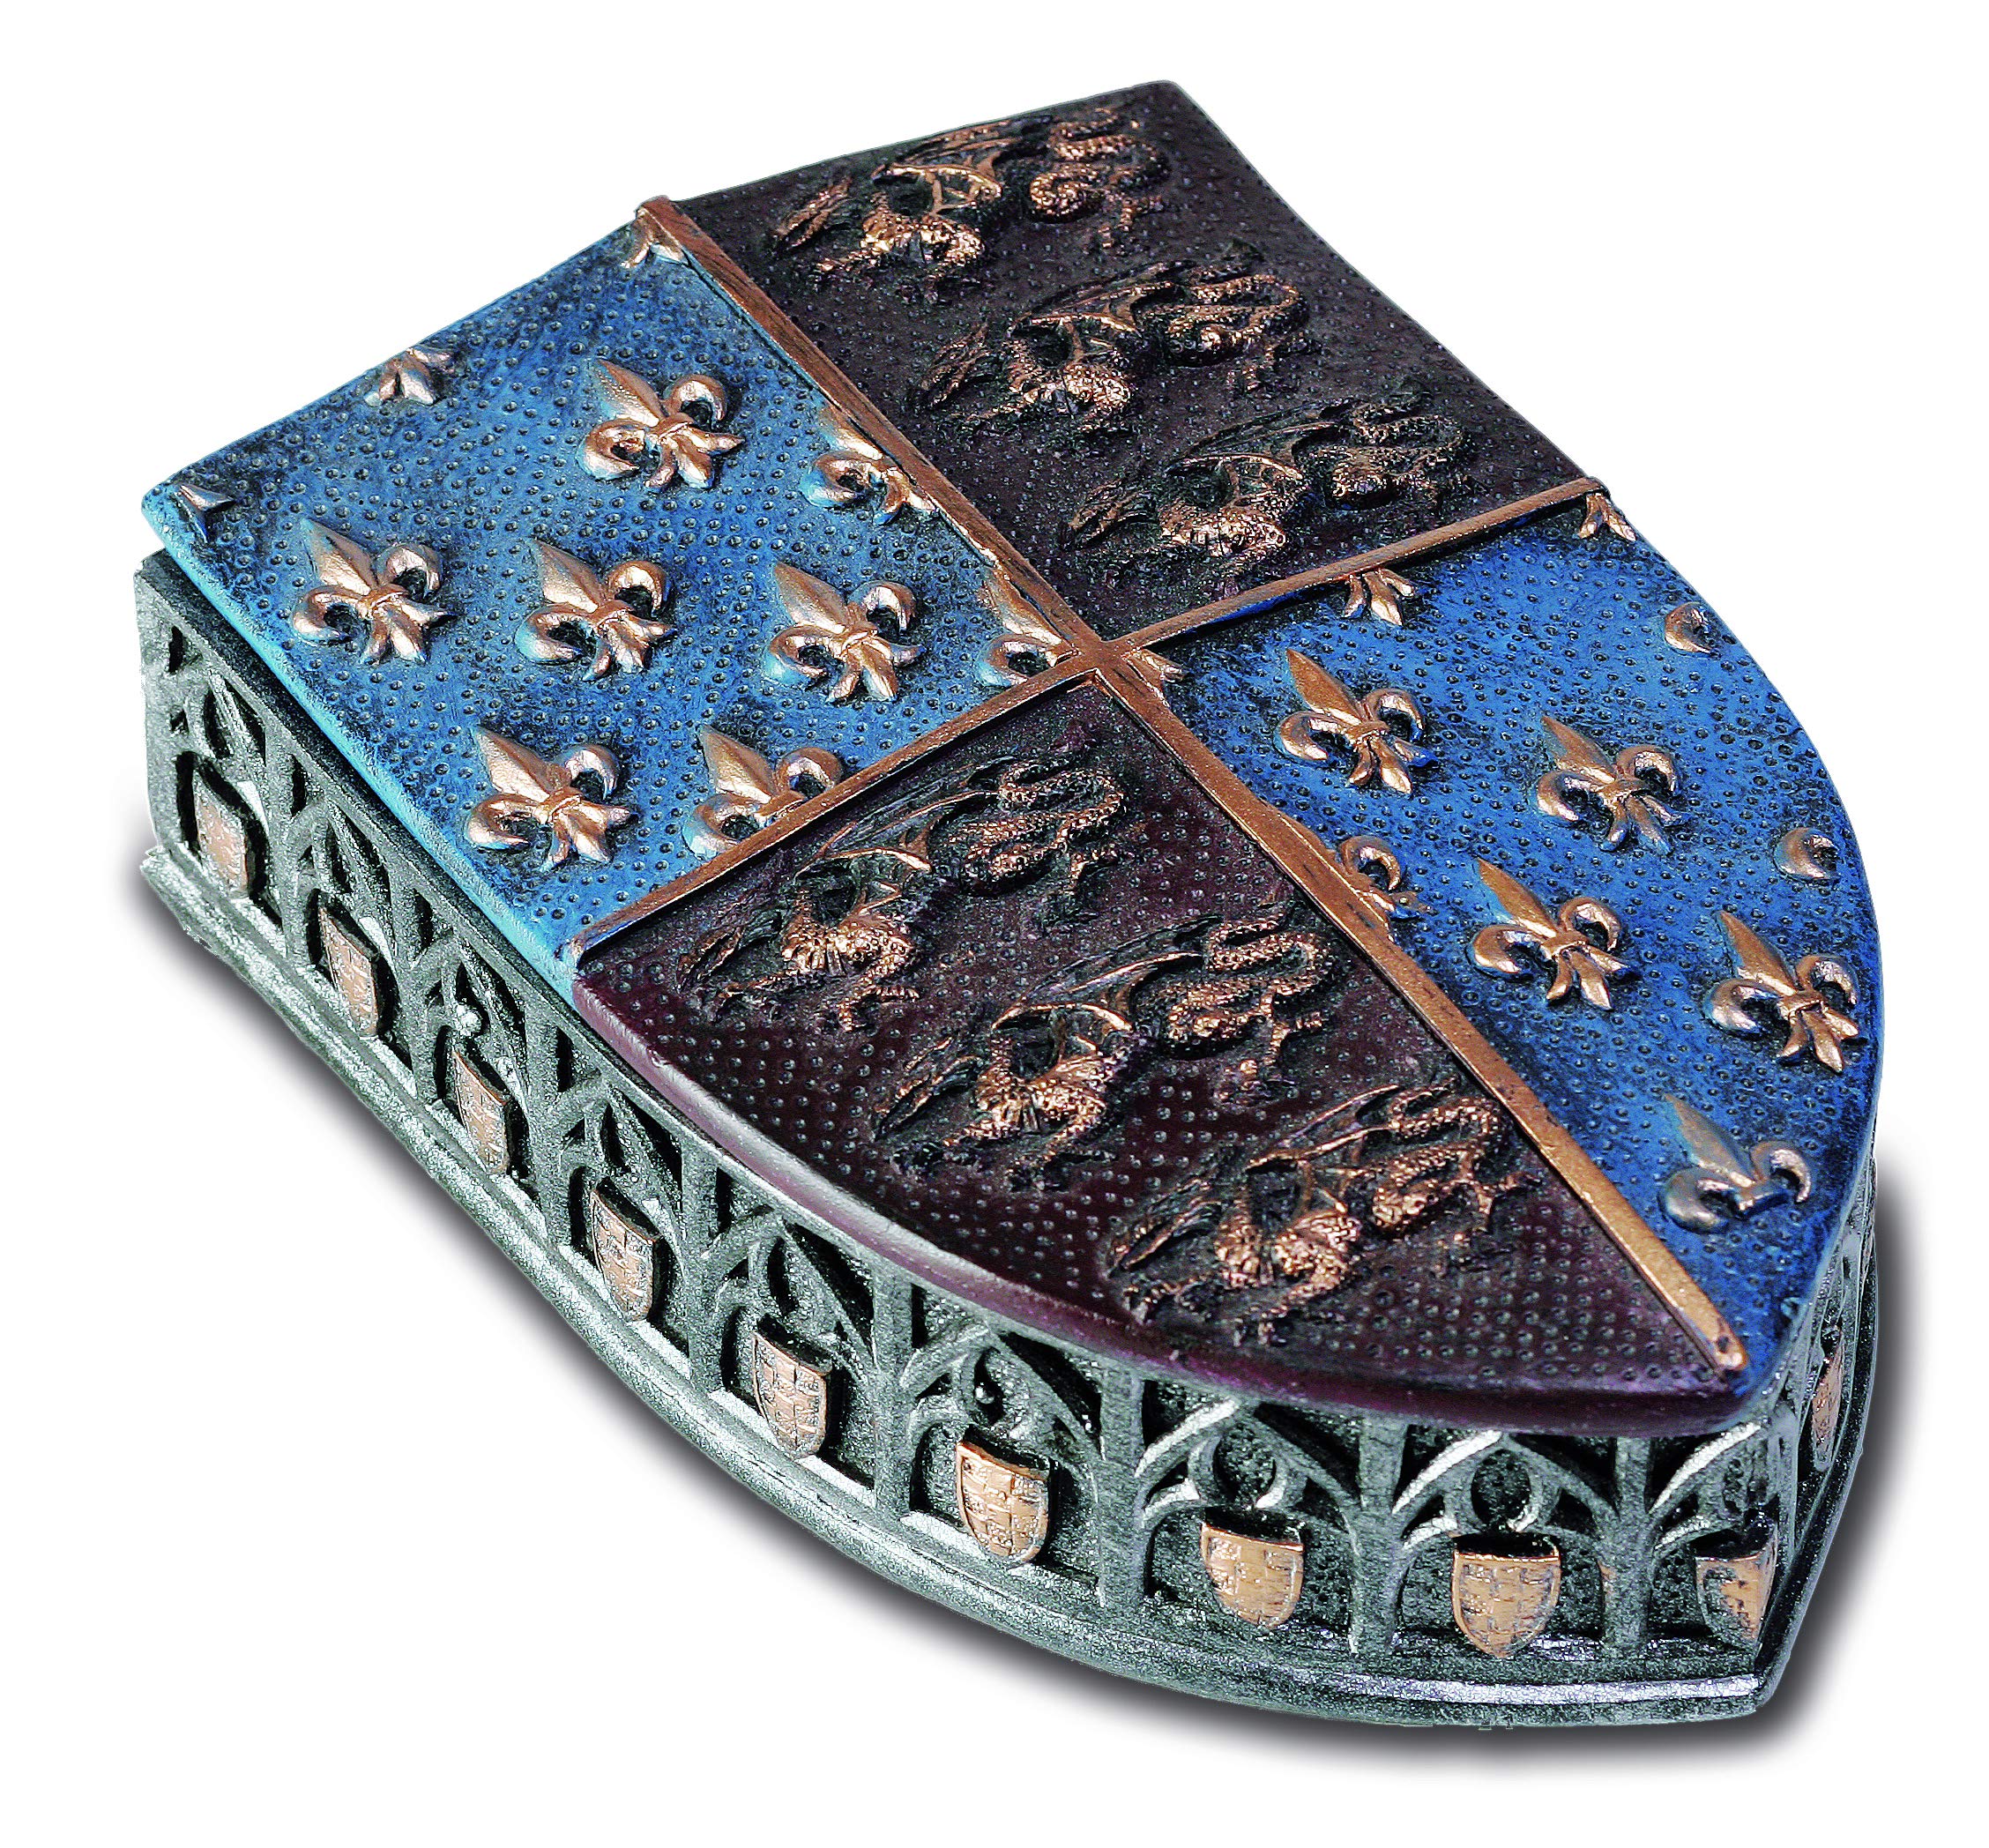 Dose mit Wappen aus Kunstharz, mittelgroß, 10,3 x 15,5 x 3 cm